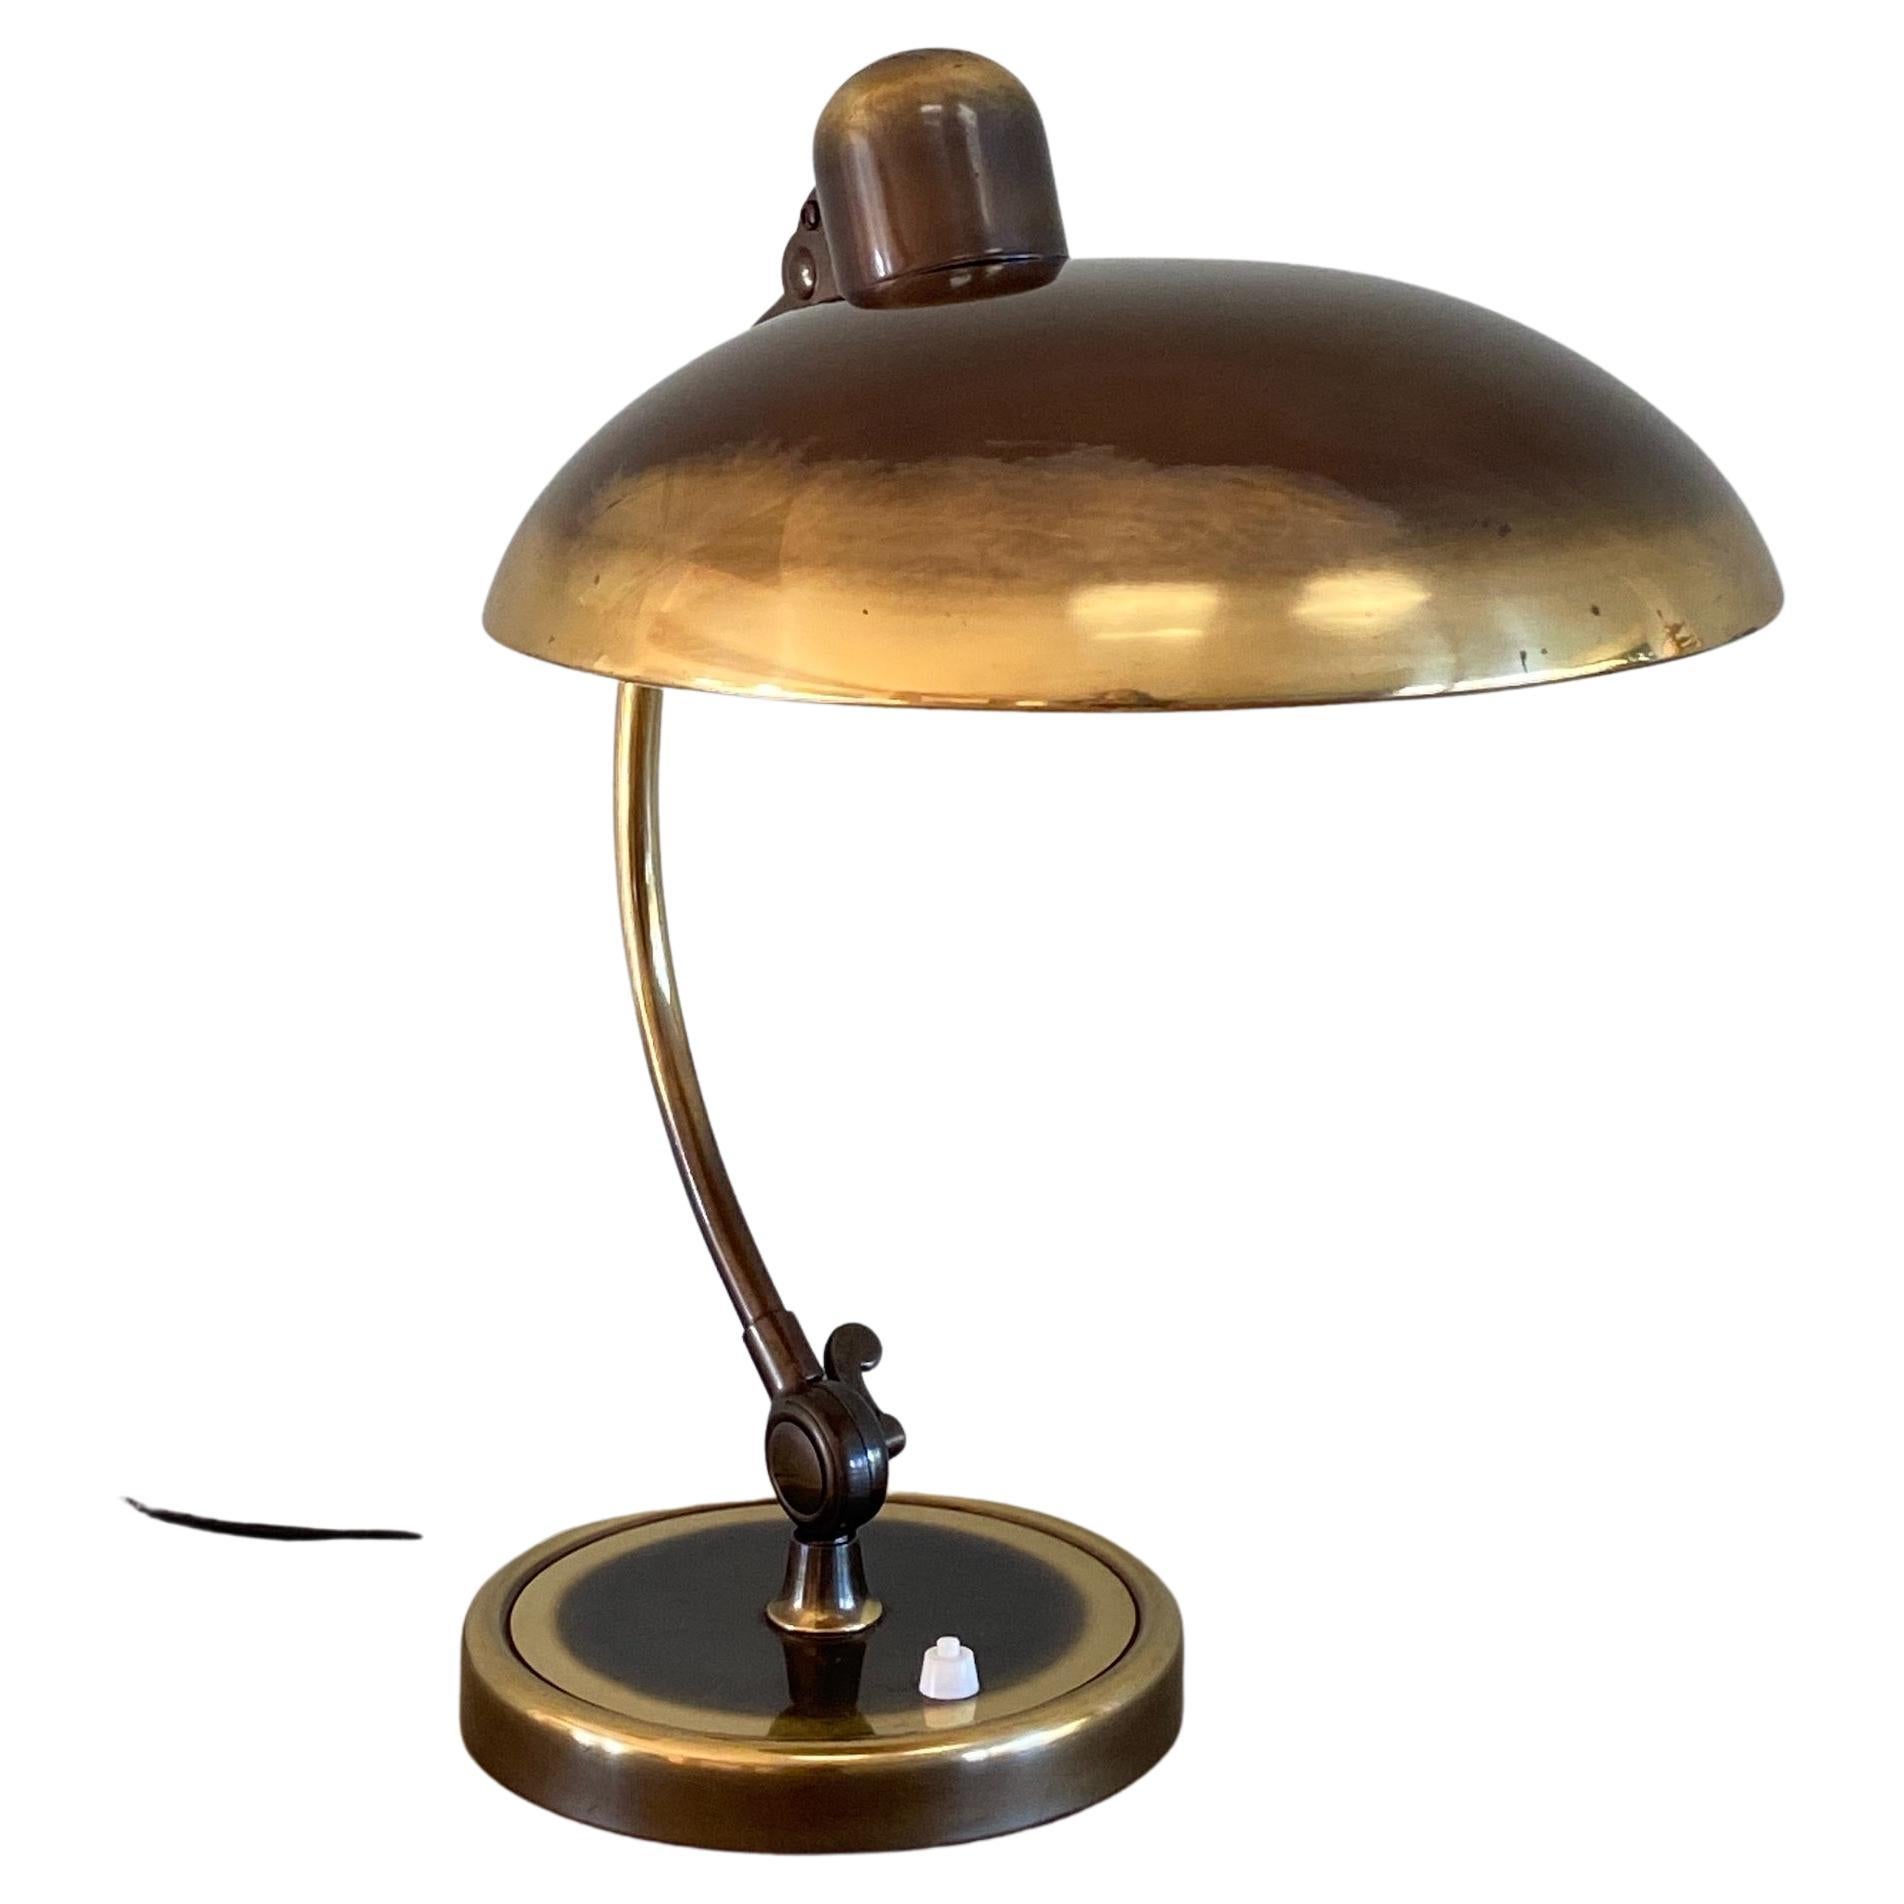 Christian Dell Brass Table Lamp 6631 Desk Lamp by Kaiser Idell Bauhaus, Germany